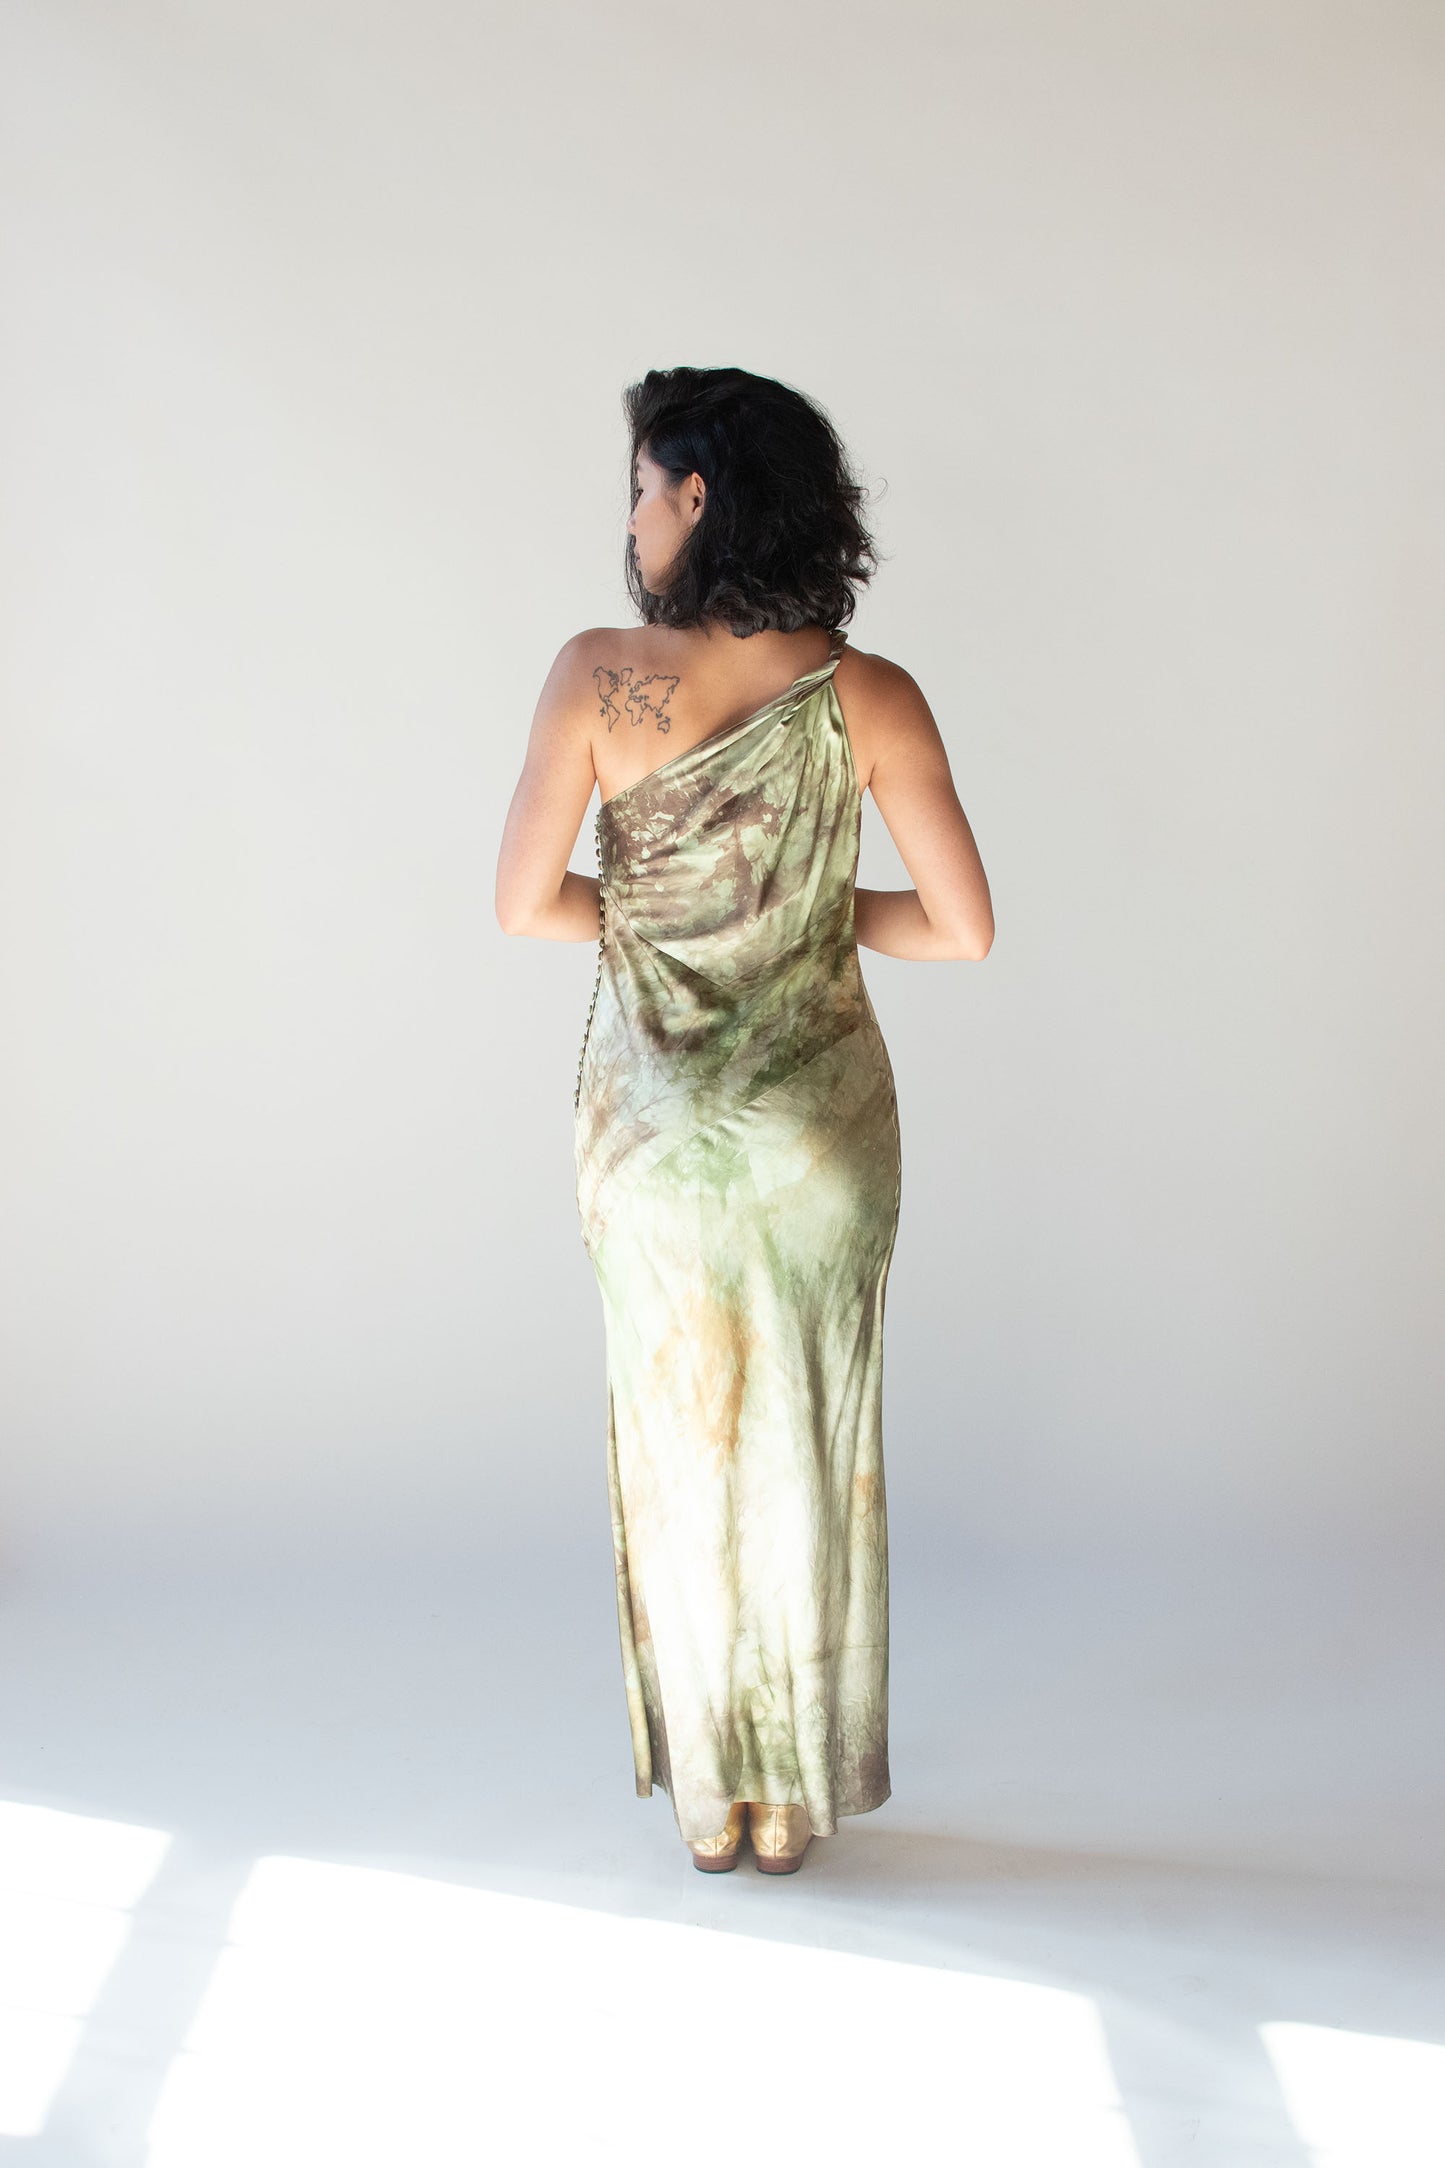 Bias Cut Silk Dress | Dior by John Galliano FW 2001